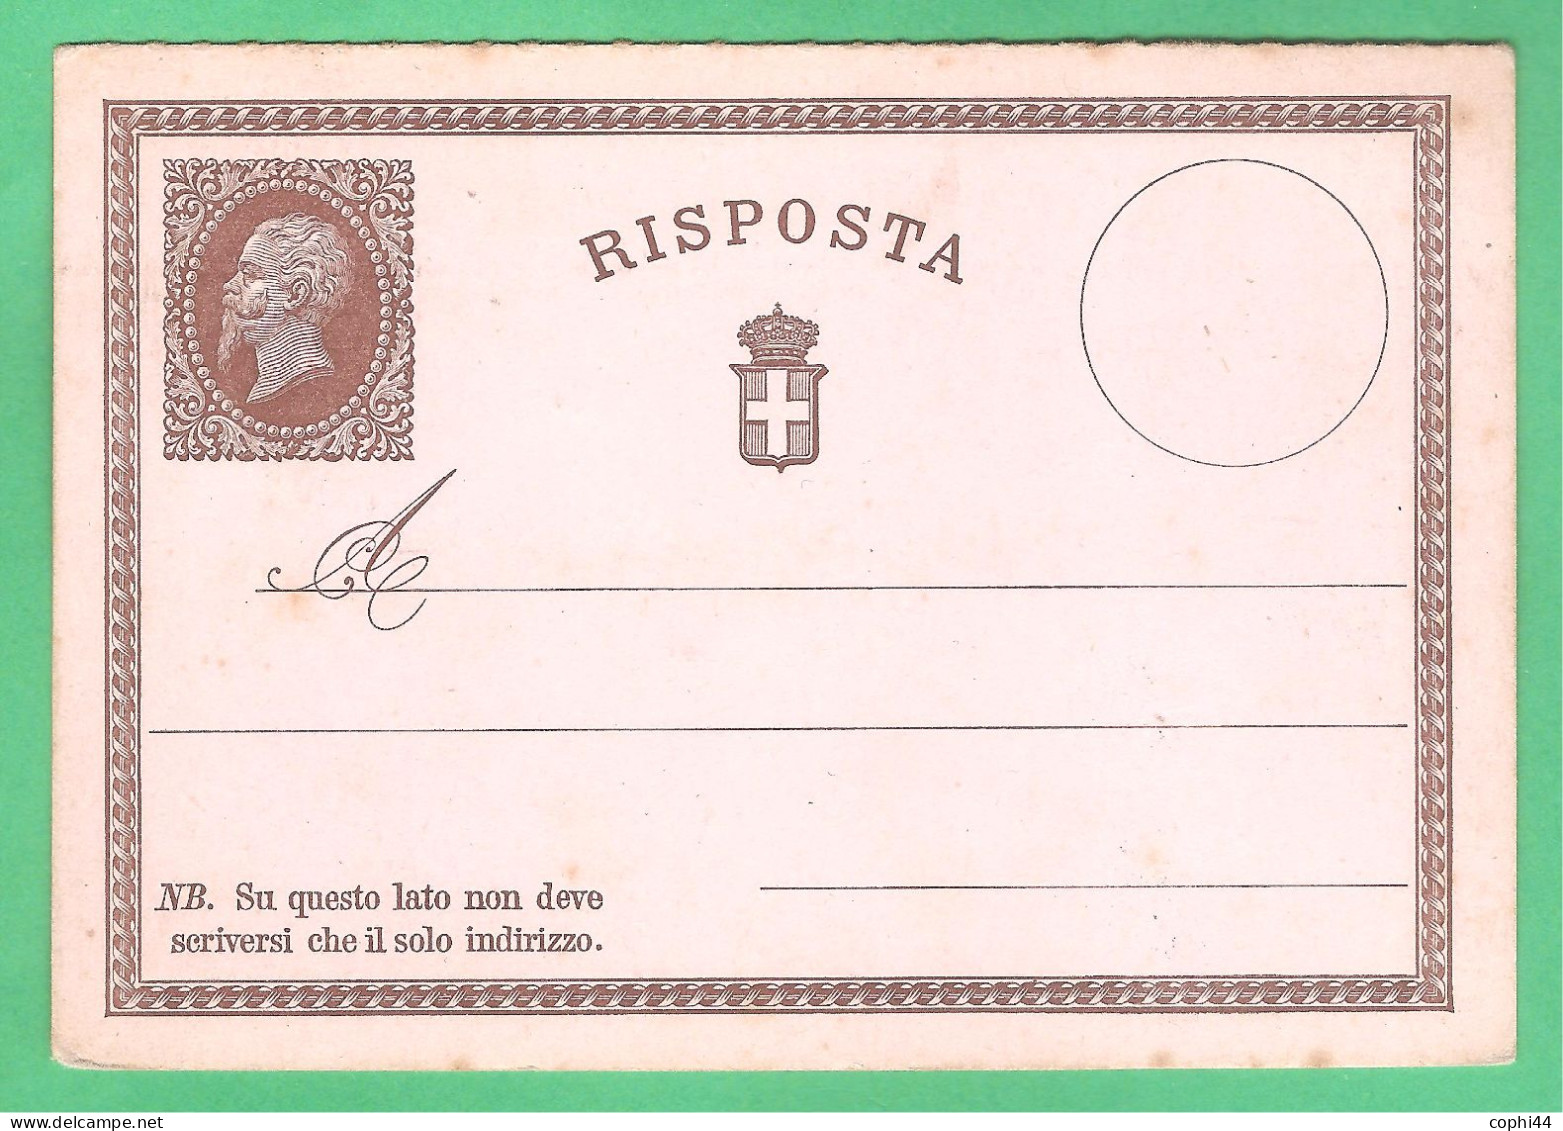 REGNO D'ITALIA 1874 VEII CARTOLINA POSTALE N. 2 C.15+R NUOVA SOLO RISPOSTA SENZA DOMANDA BUONE CONDIZIONI - Interi Postali